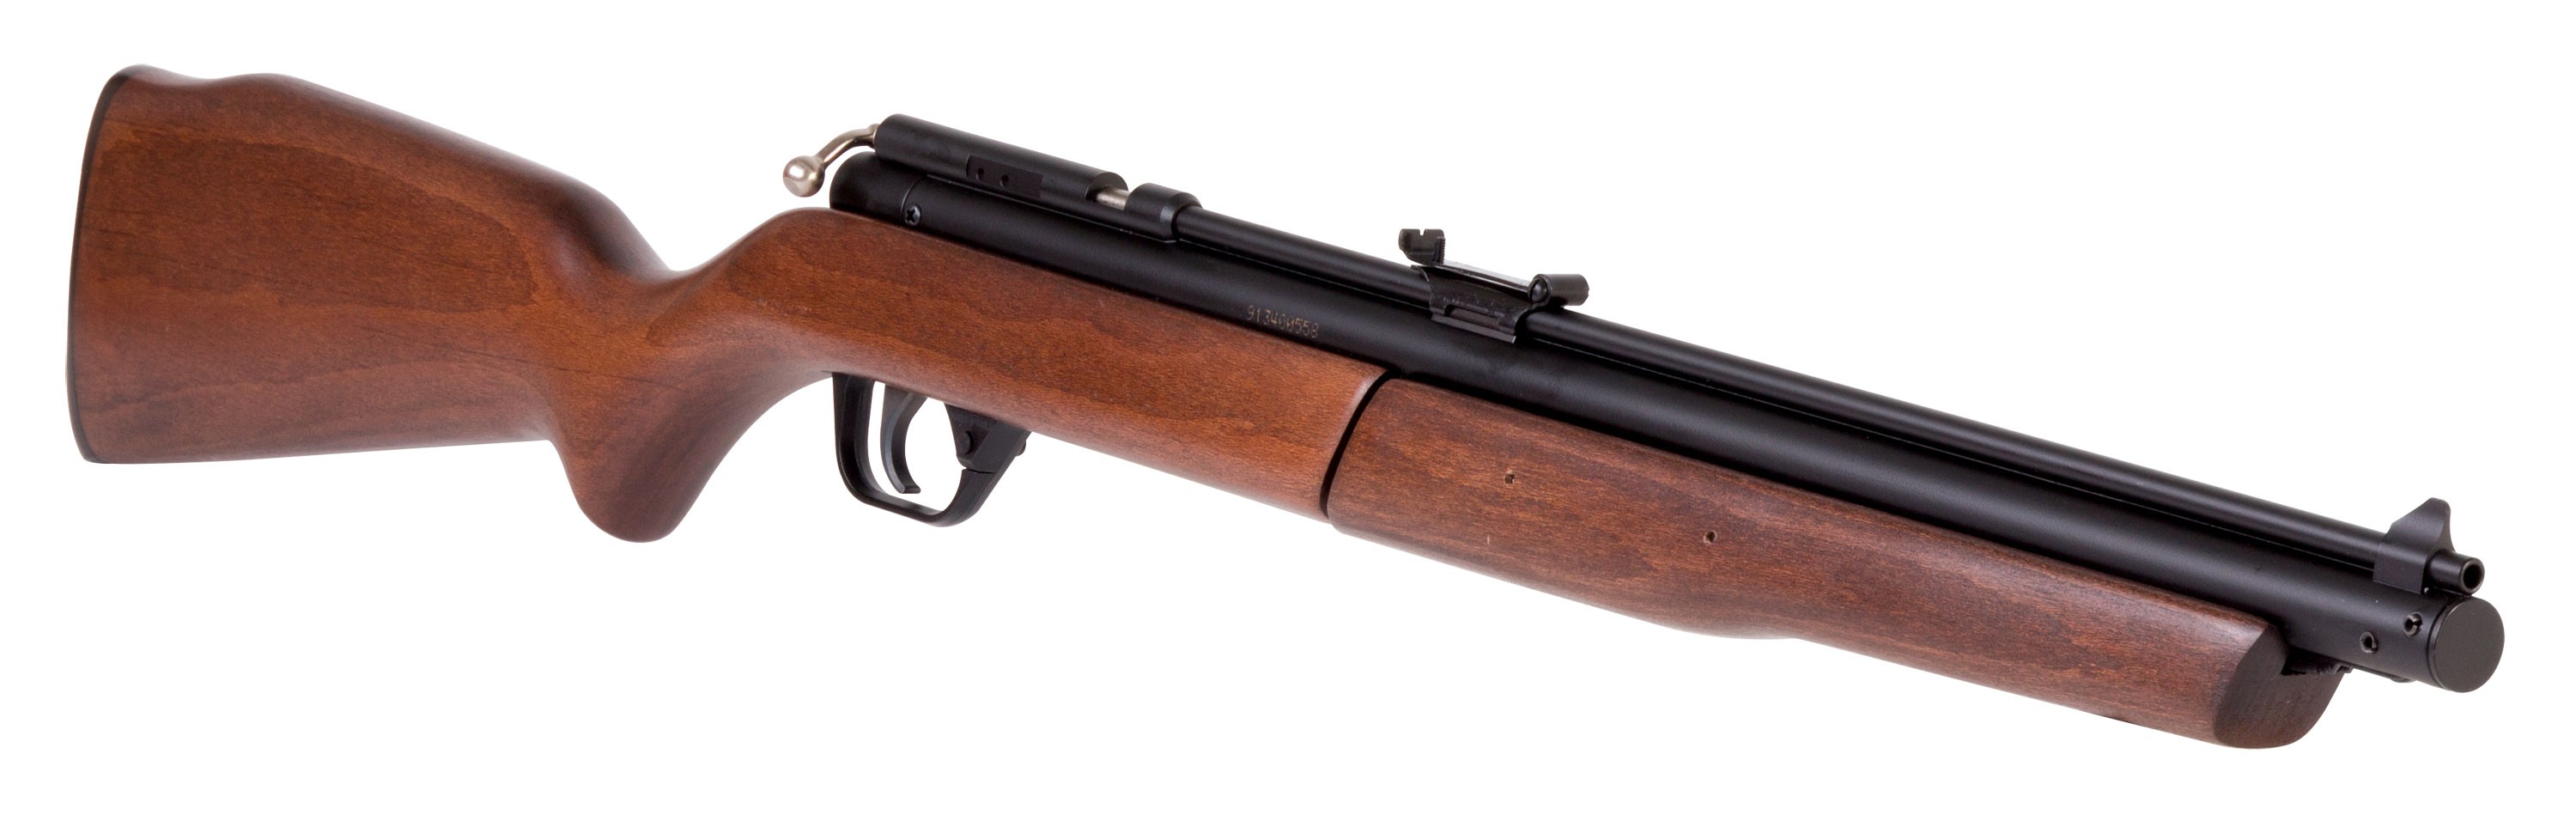 benjamin franklin air rifle 22 cal model 392 scope mount